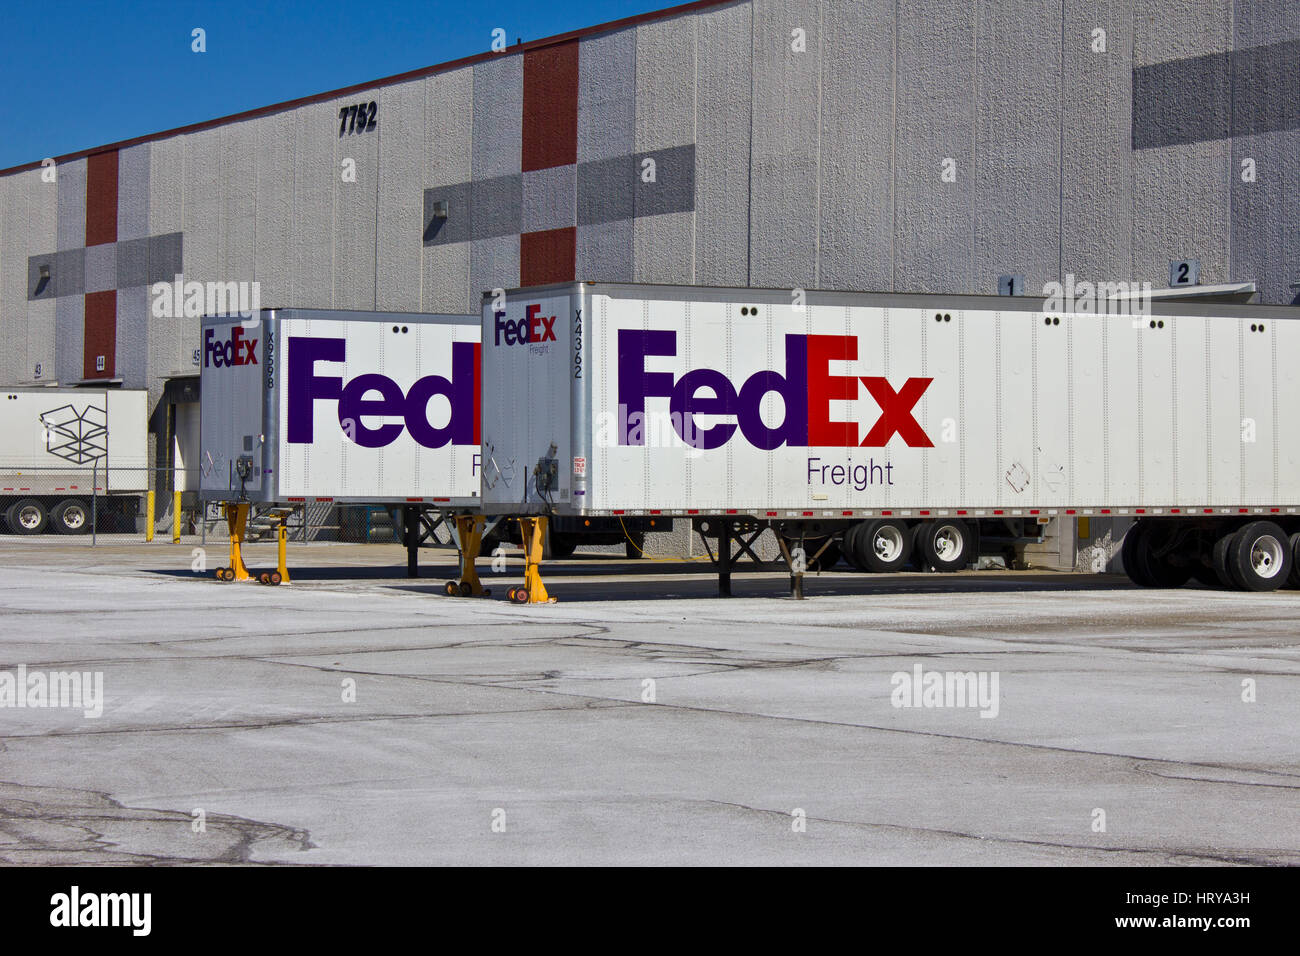 Indianapolis - Circa Février 2016 : Federal Express camions dans les quais de chargement. FedEx est une société de services de livraison de courrier mondial VII Banque D'Images